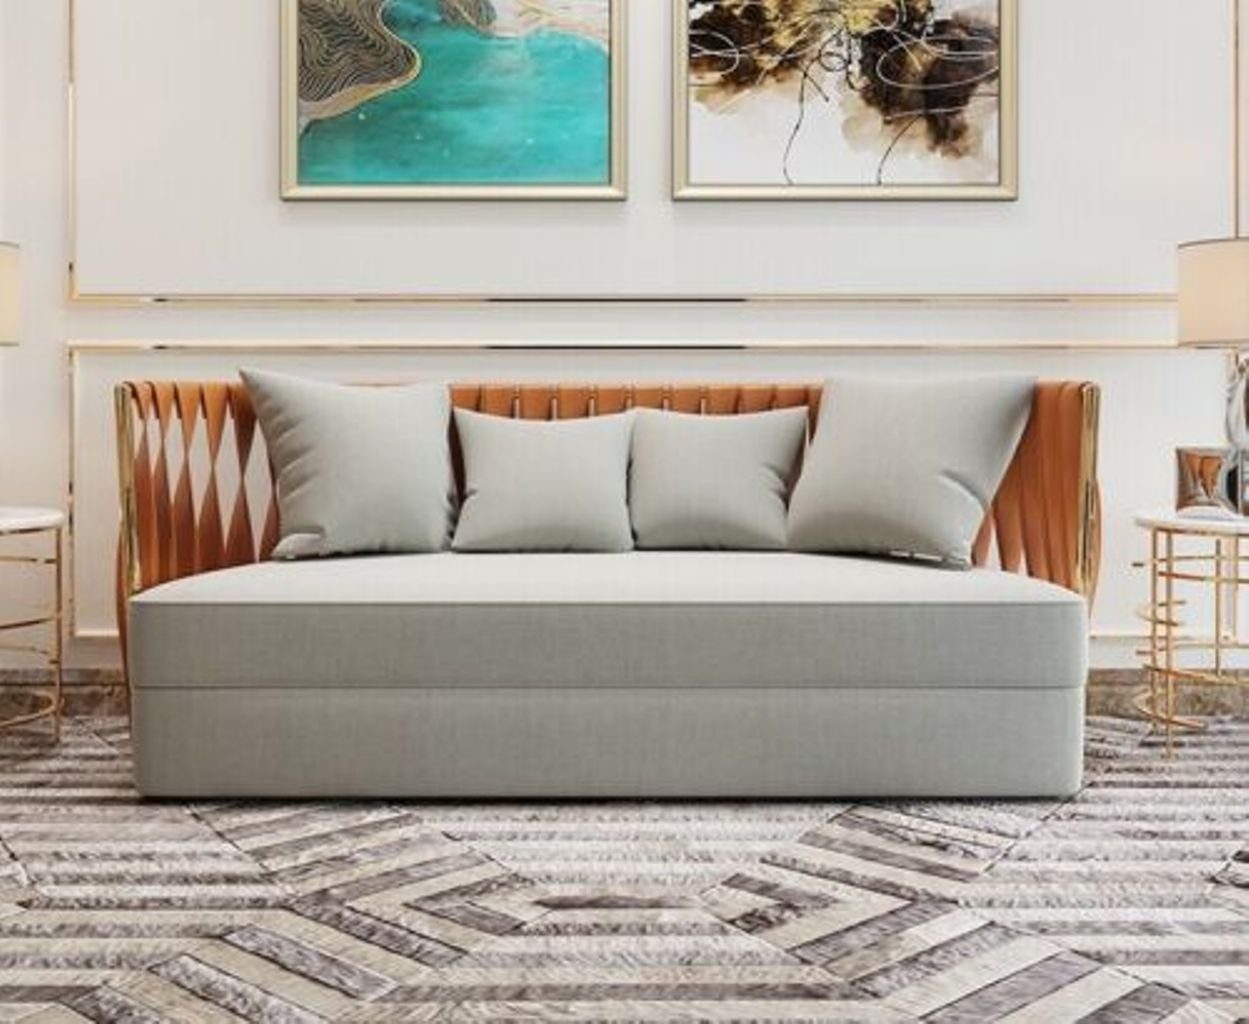 JVmoebel Wohnzimmer-Set, Metall Couch Polster Sitz Garnitur Sofa 3+1 Stoff Design Garnituren Weiß/Orange